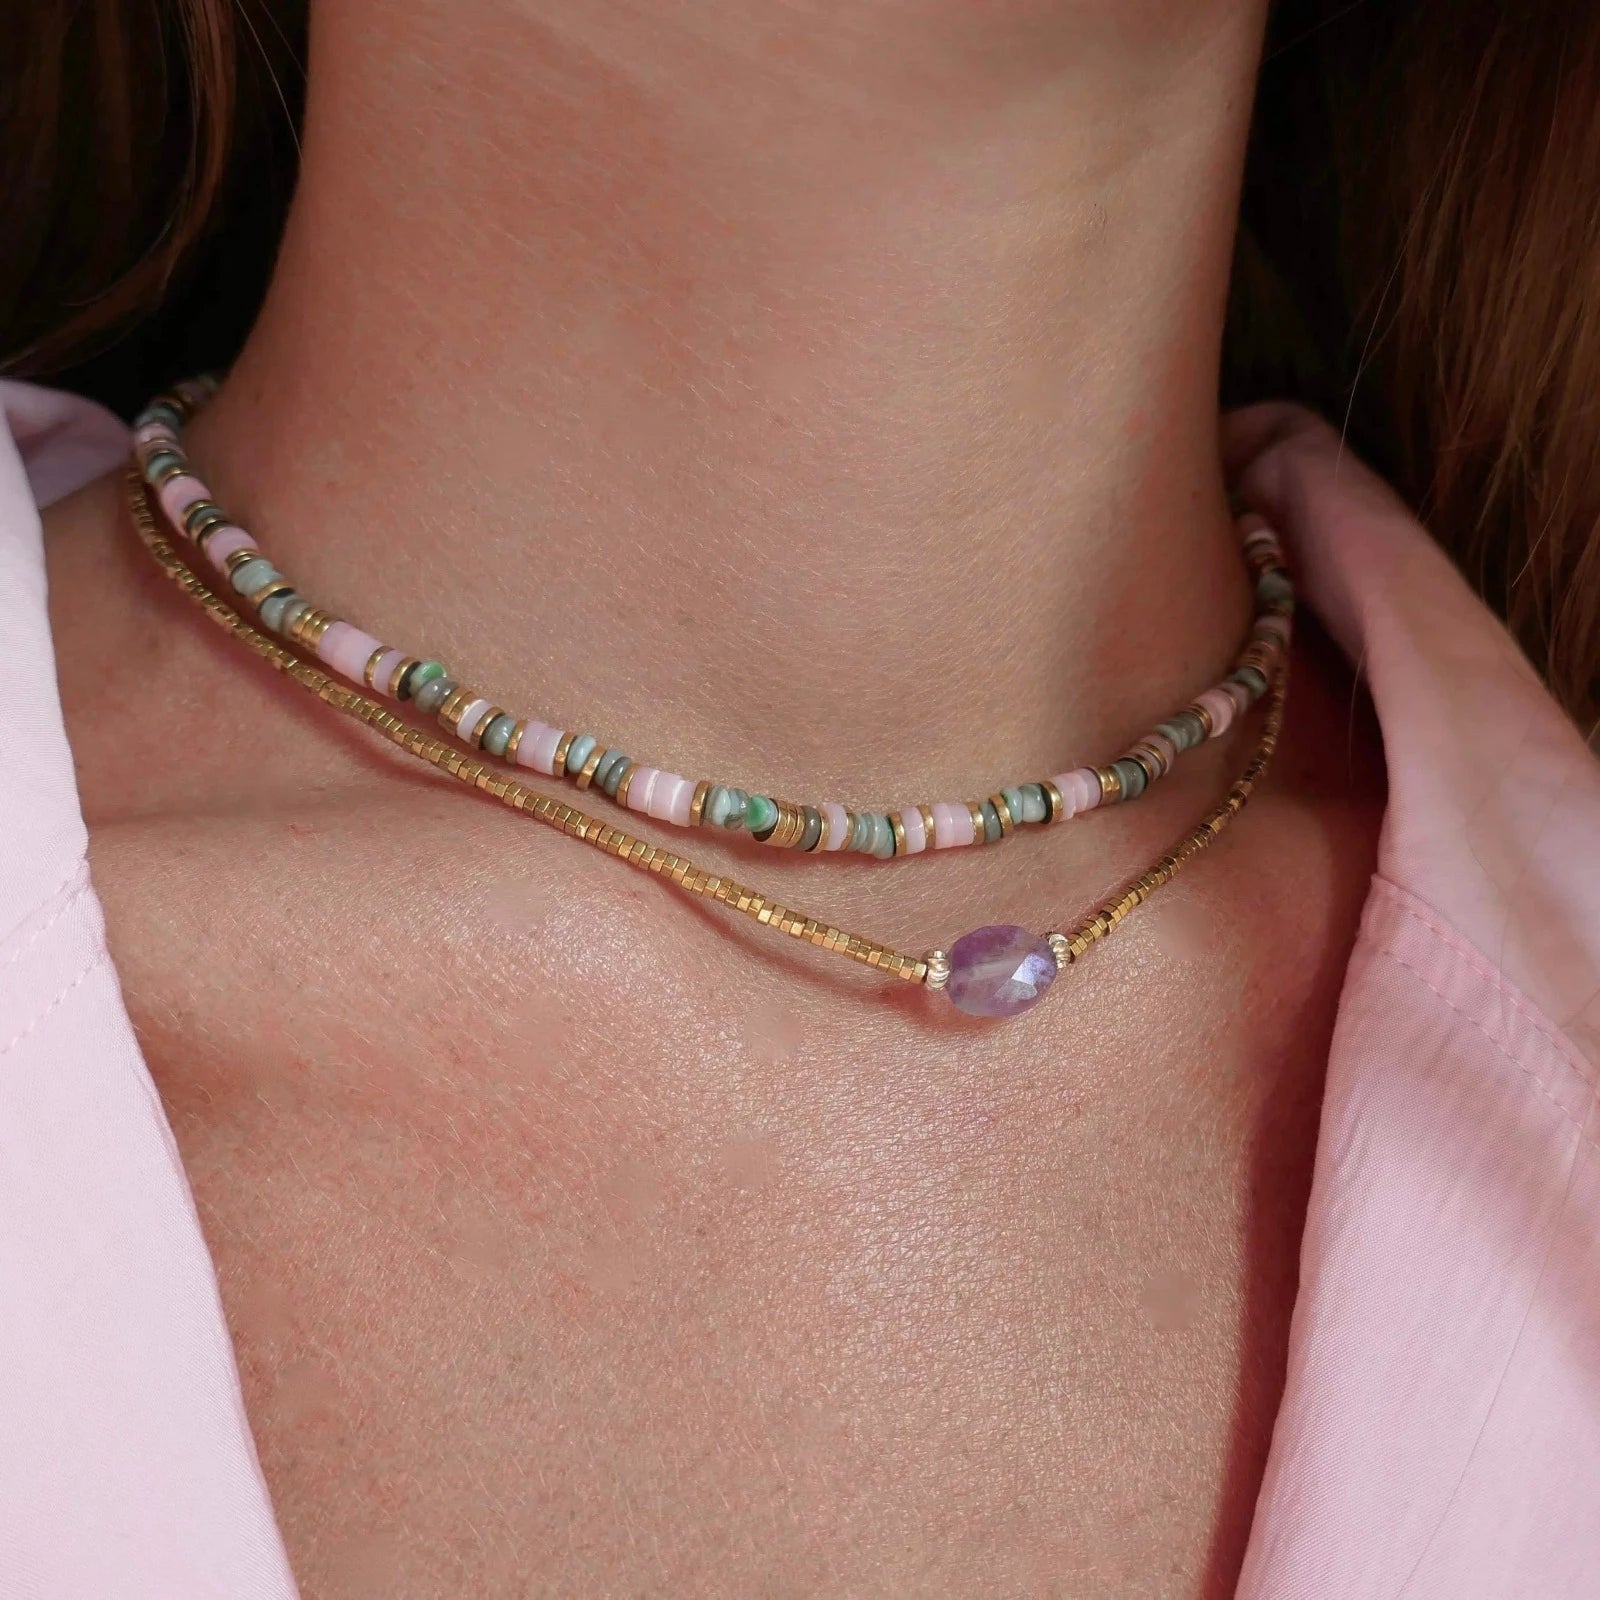 femme en été portant des colliers en perles colorées et dorés